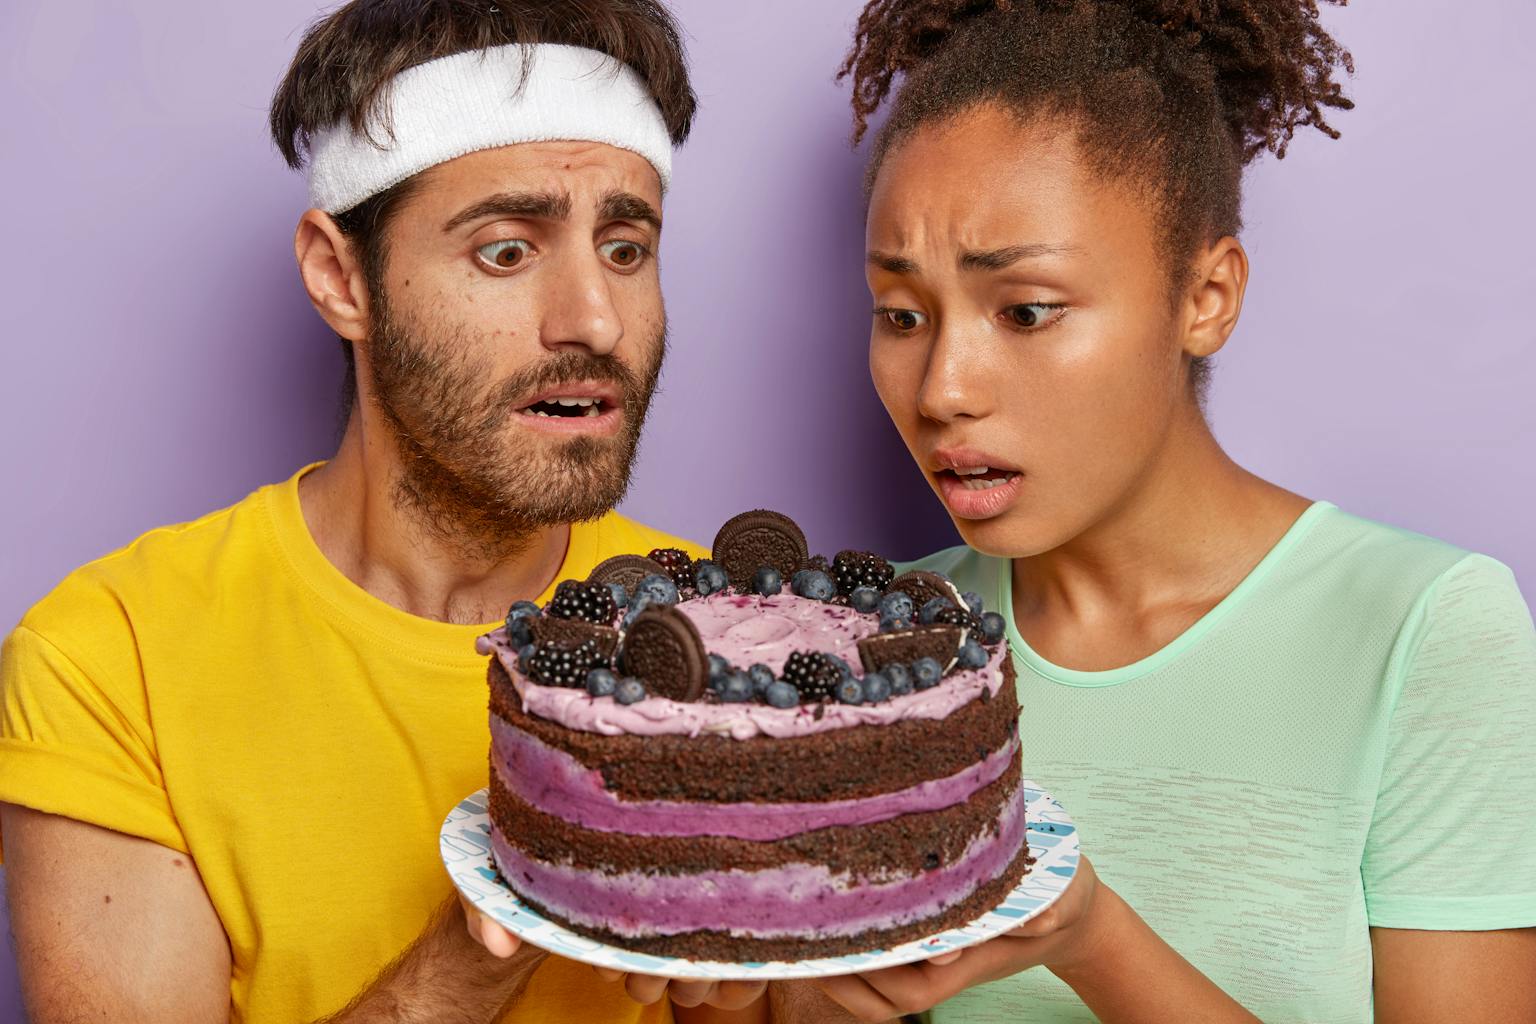 twee mensen kijken verlekkerd en wanhopig tegelijkertijd naar een taart